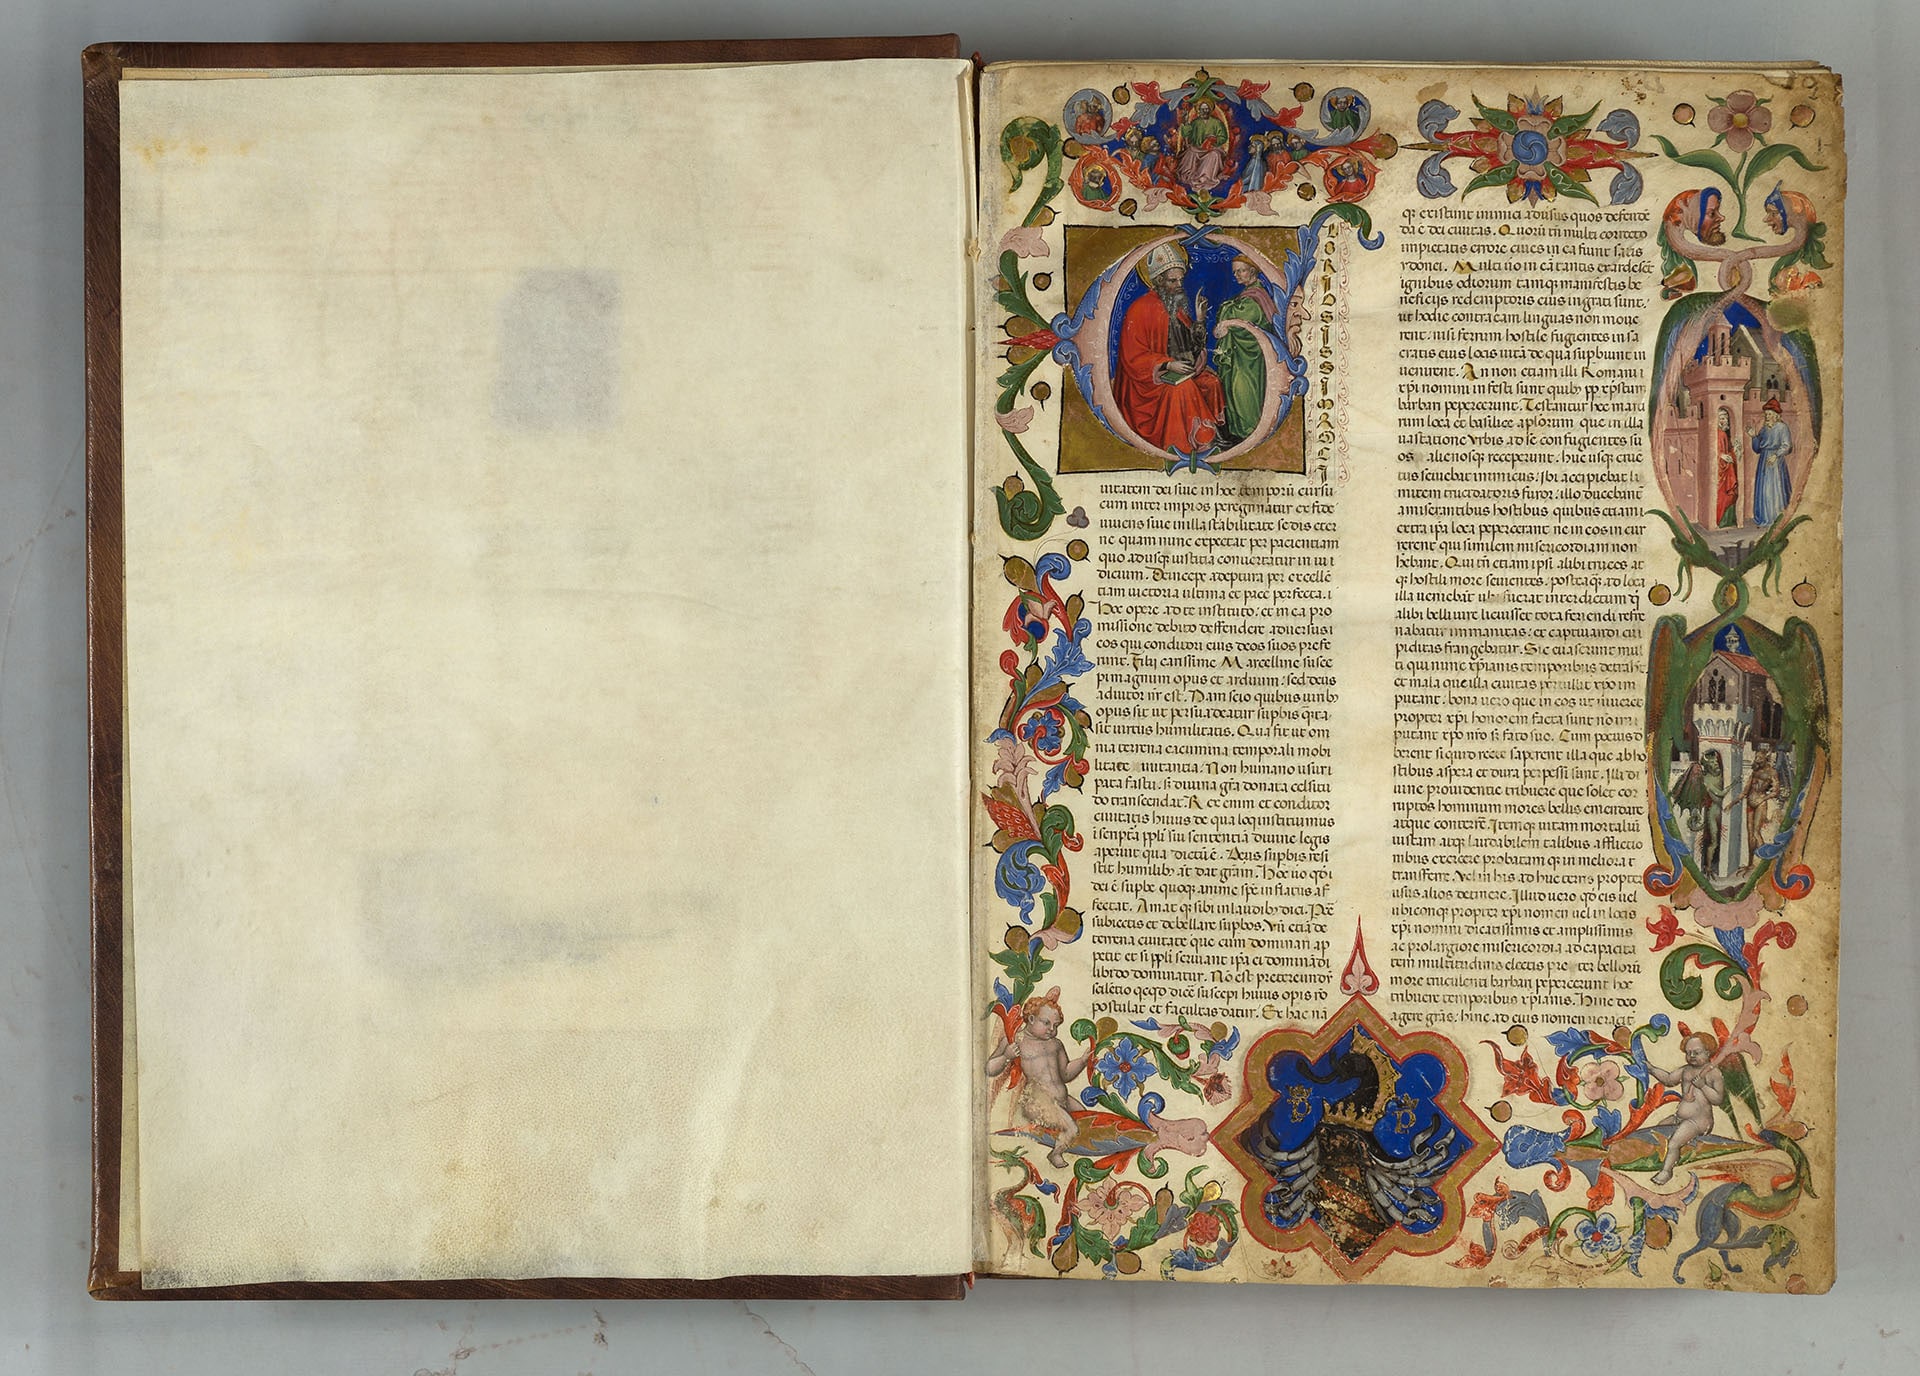 Sant’Agostino, De civitate Dei, 1417-1419. Rimini, Biblioteca Gambalunga. Biblioteca Civica Gambalunga 